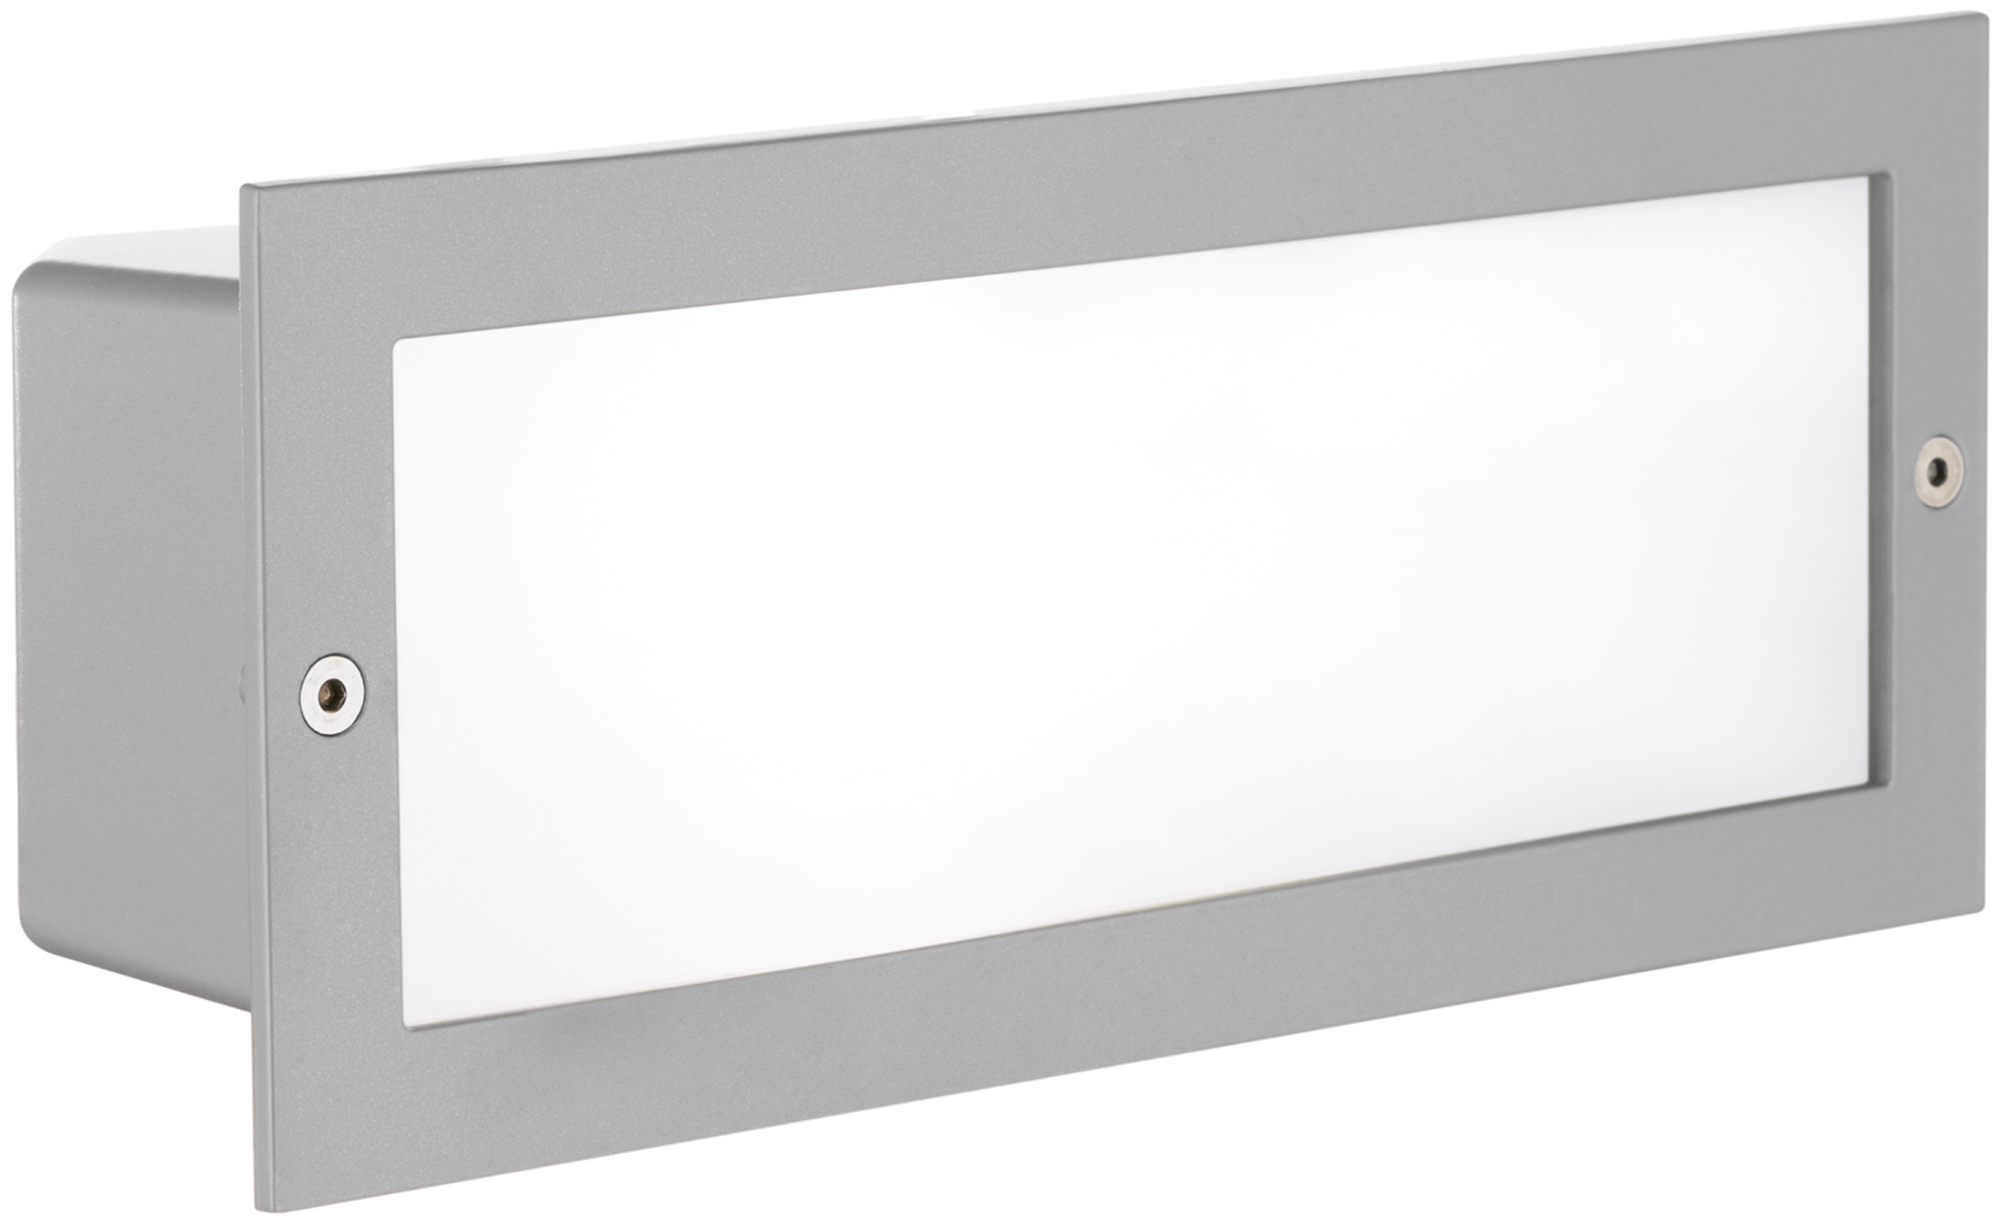 Уличный светильник встраиваемый ZIMBA, 1х60W(E27), 243х101, алюминий, серебро/матовое стекло